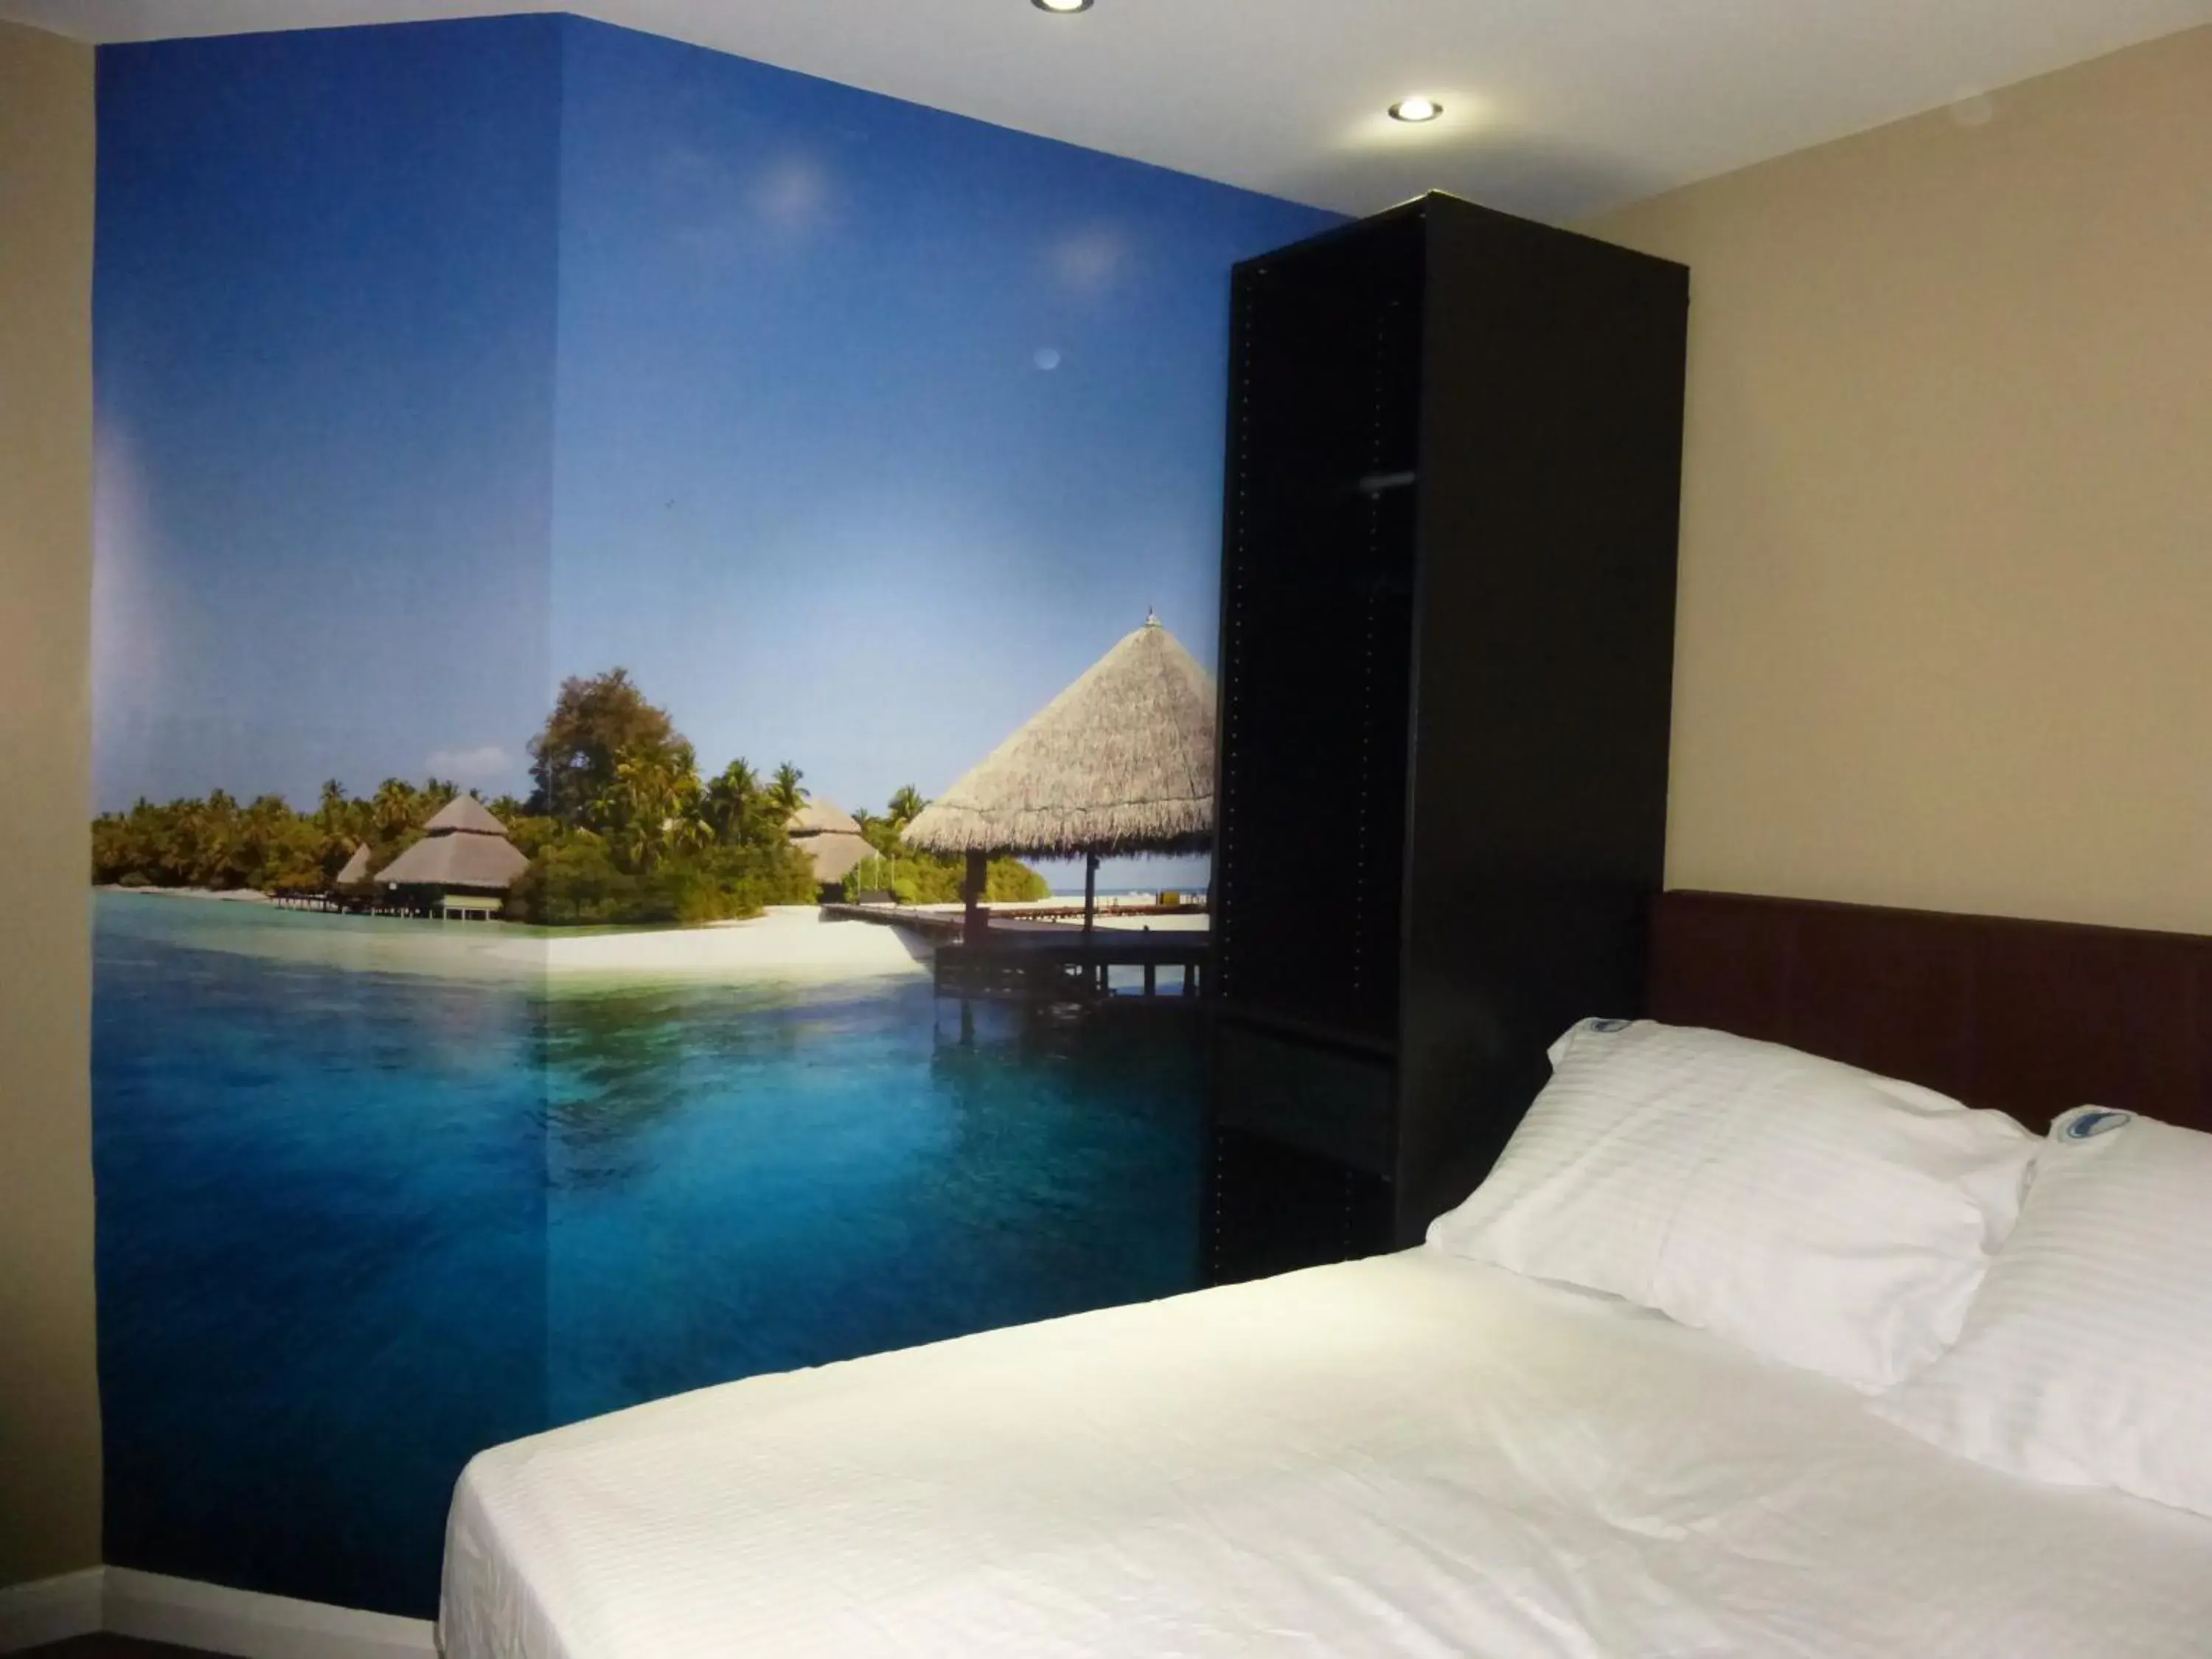 Bedroom in Dreams Hotel